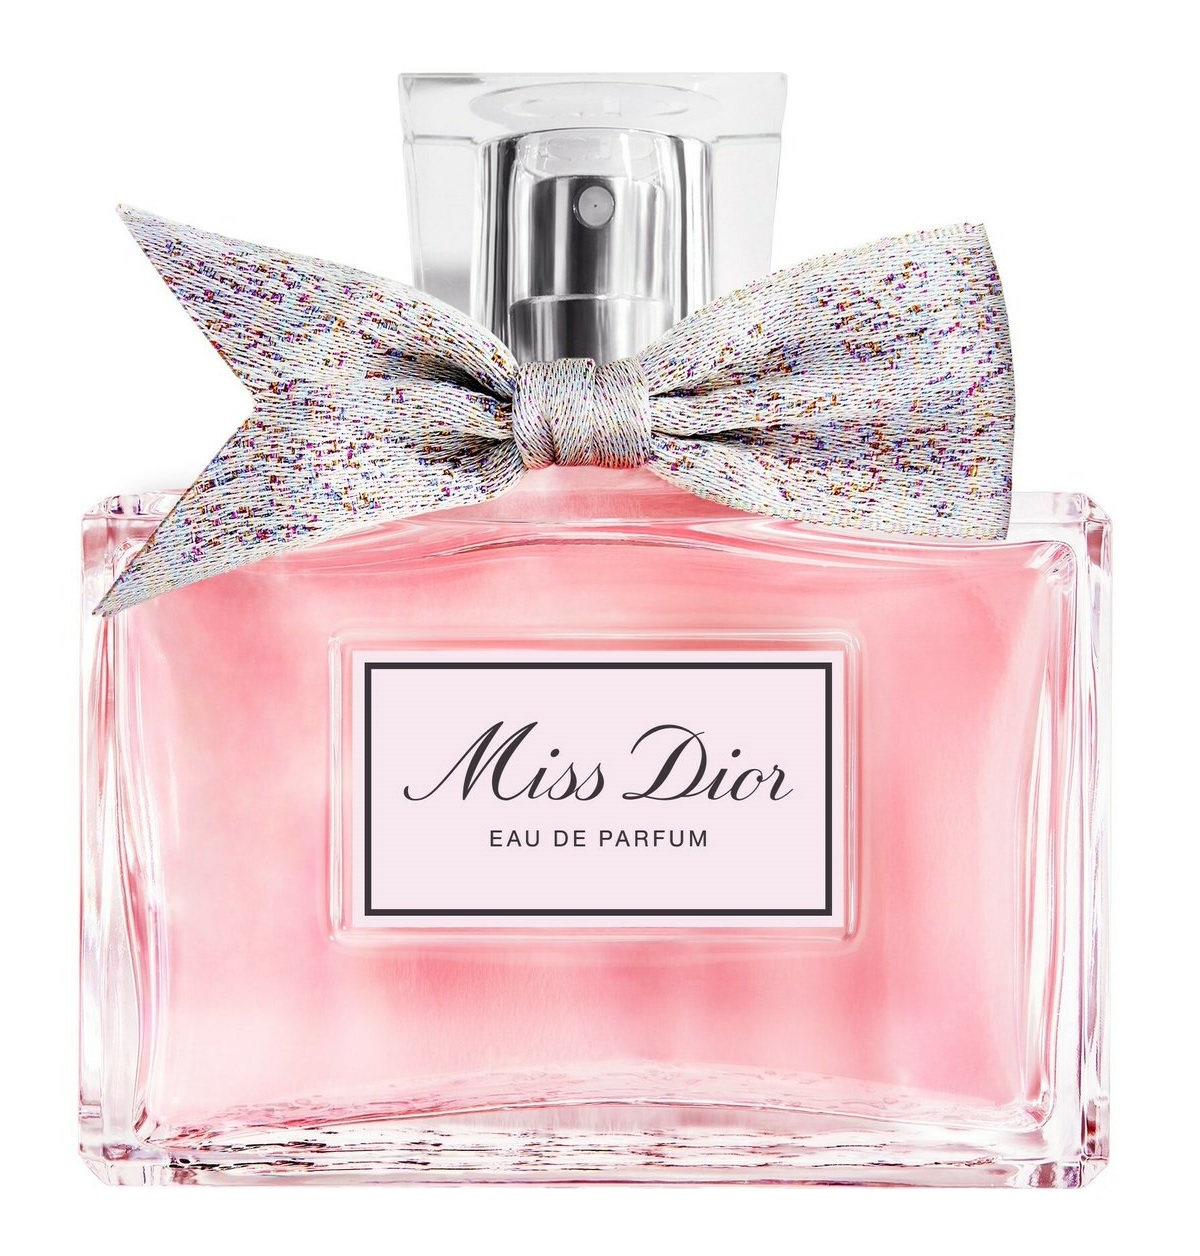 Dior为2021年重塑了Miss Dior Eau de Parfum ~ 新香水